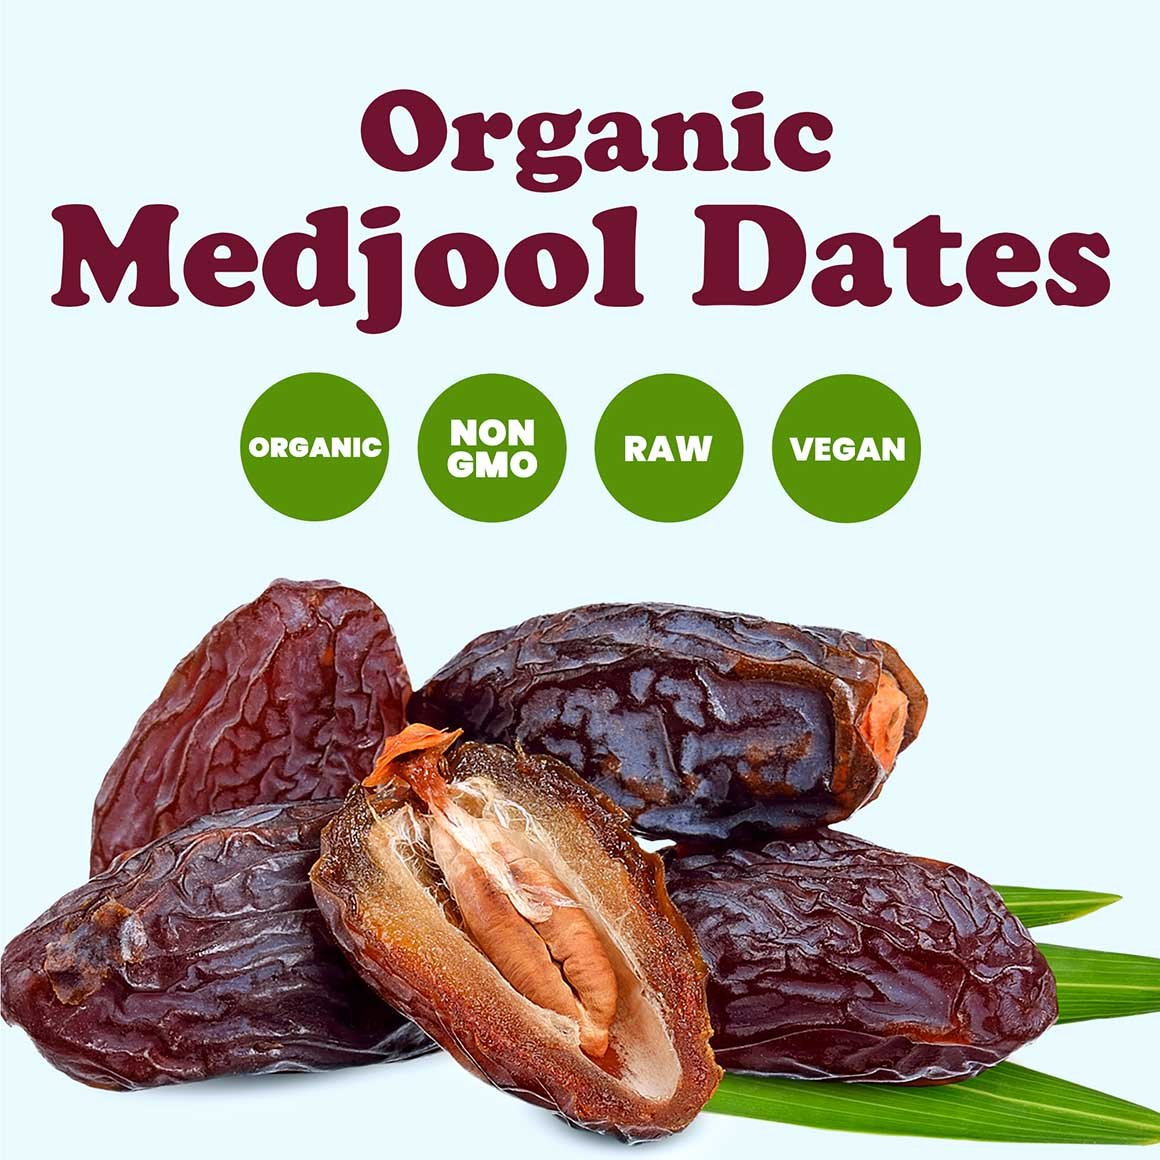 organic-medjool-dates-2-min-upd